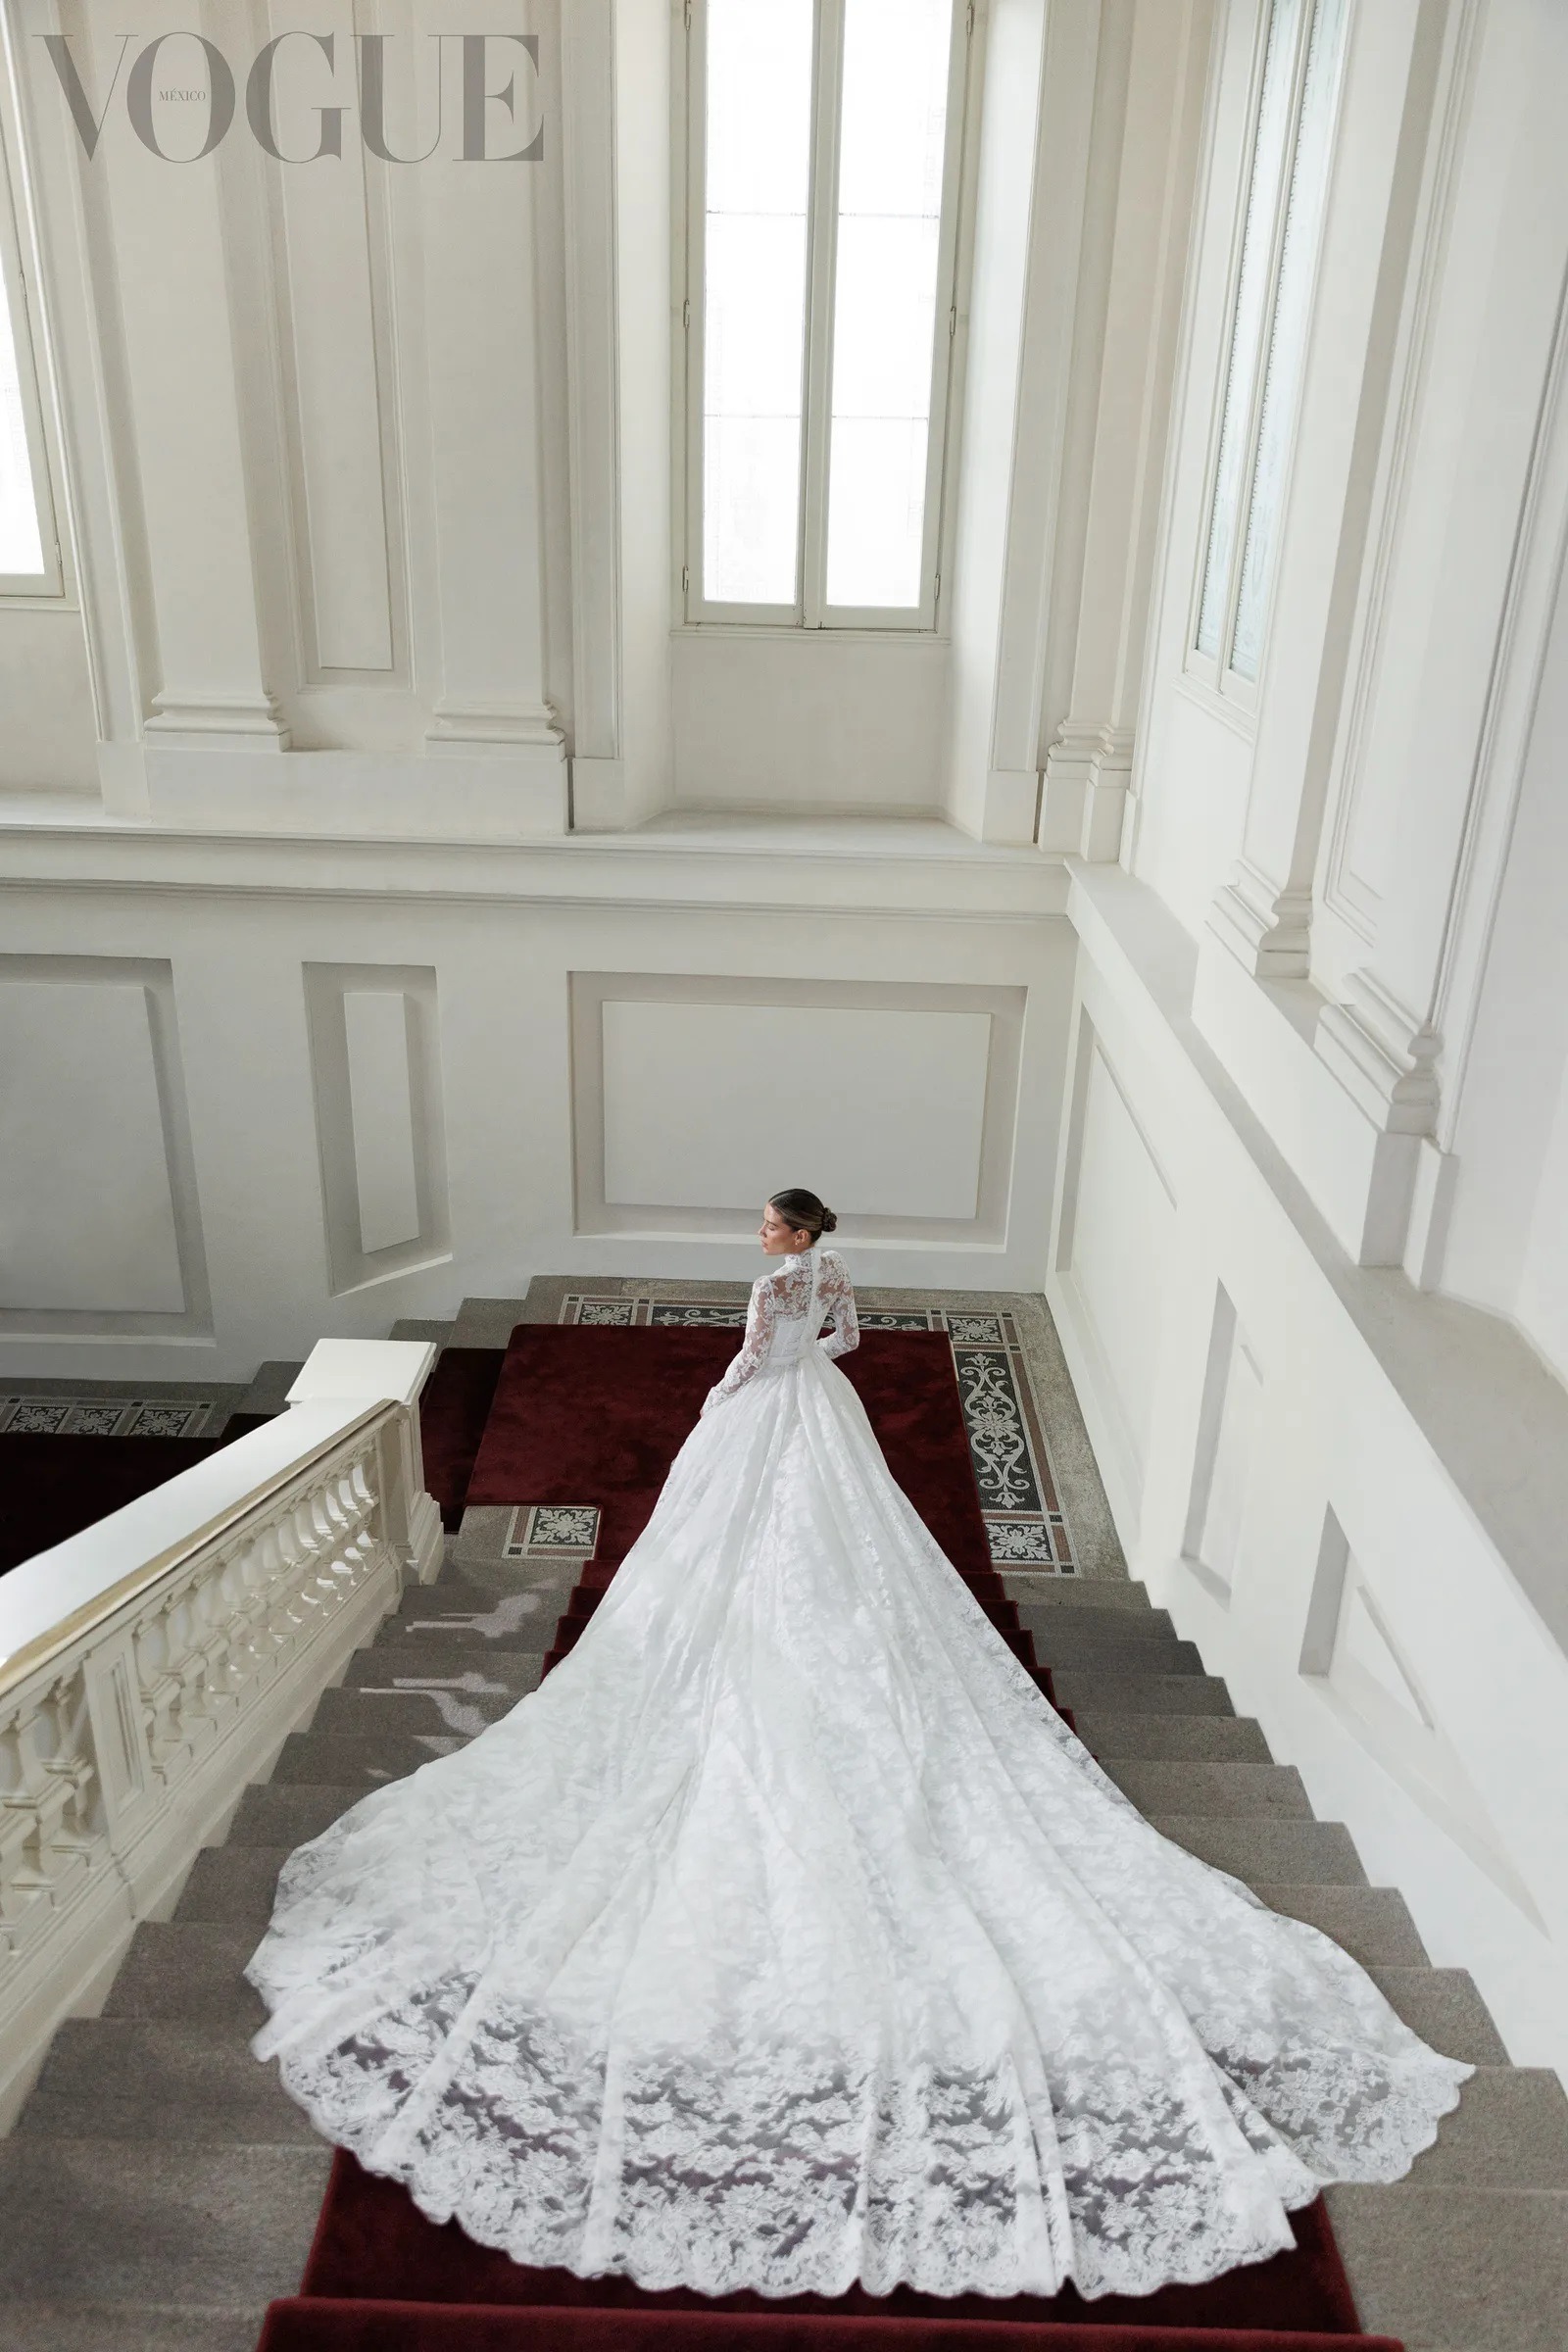 Michelle Salas luciendo su vestido de novia. Fuente: Vogue